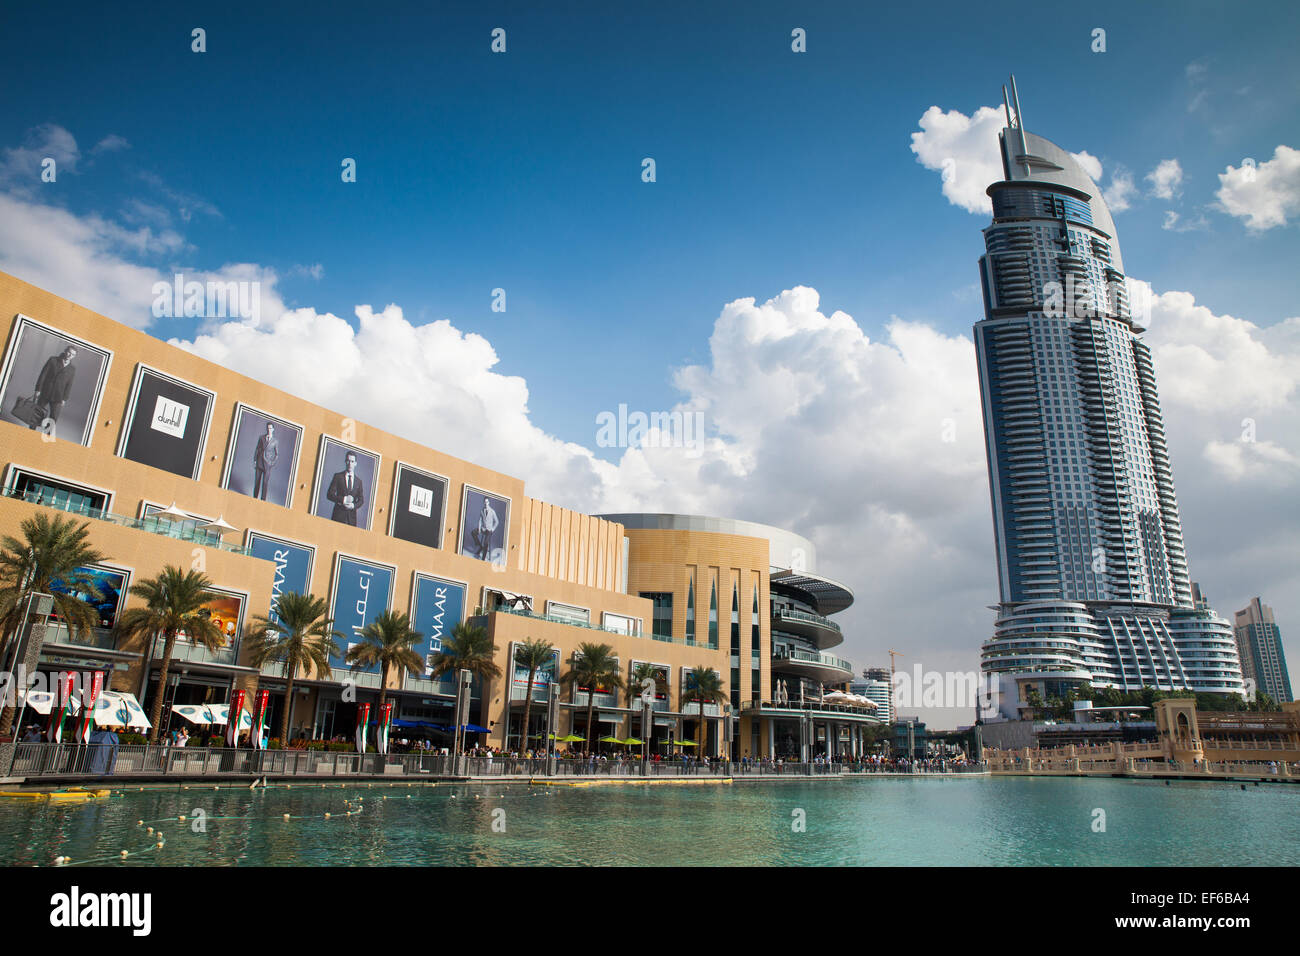 22 novembre 2013 - Dubaï, Émirats arabes unis : ville moderne de Dubaï, Business Bay, Centre Commercial de Dubaï à gauche avec plusieurs personnes marchant à la p Banque D'Images